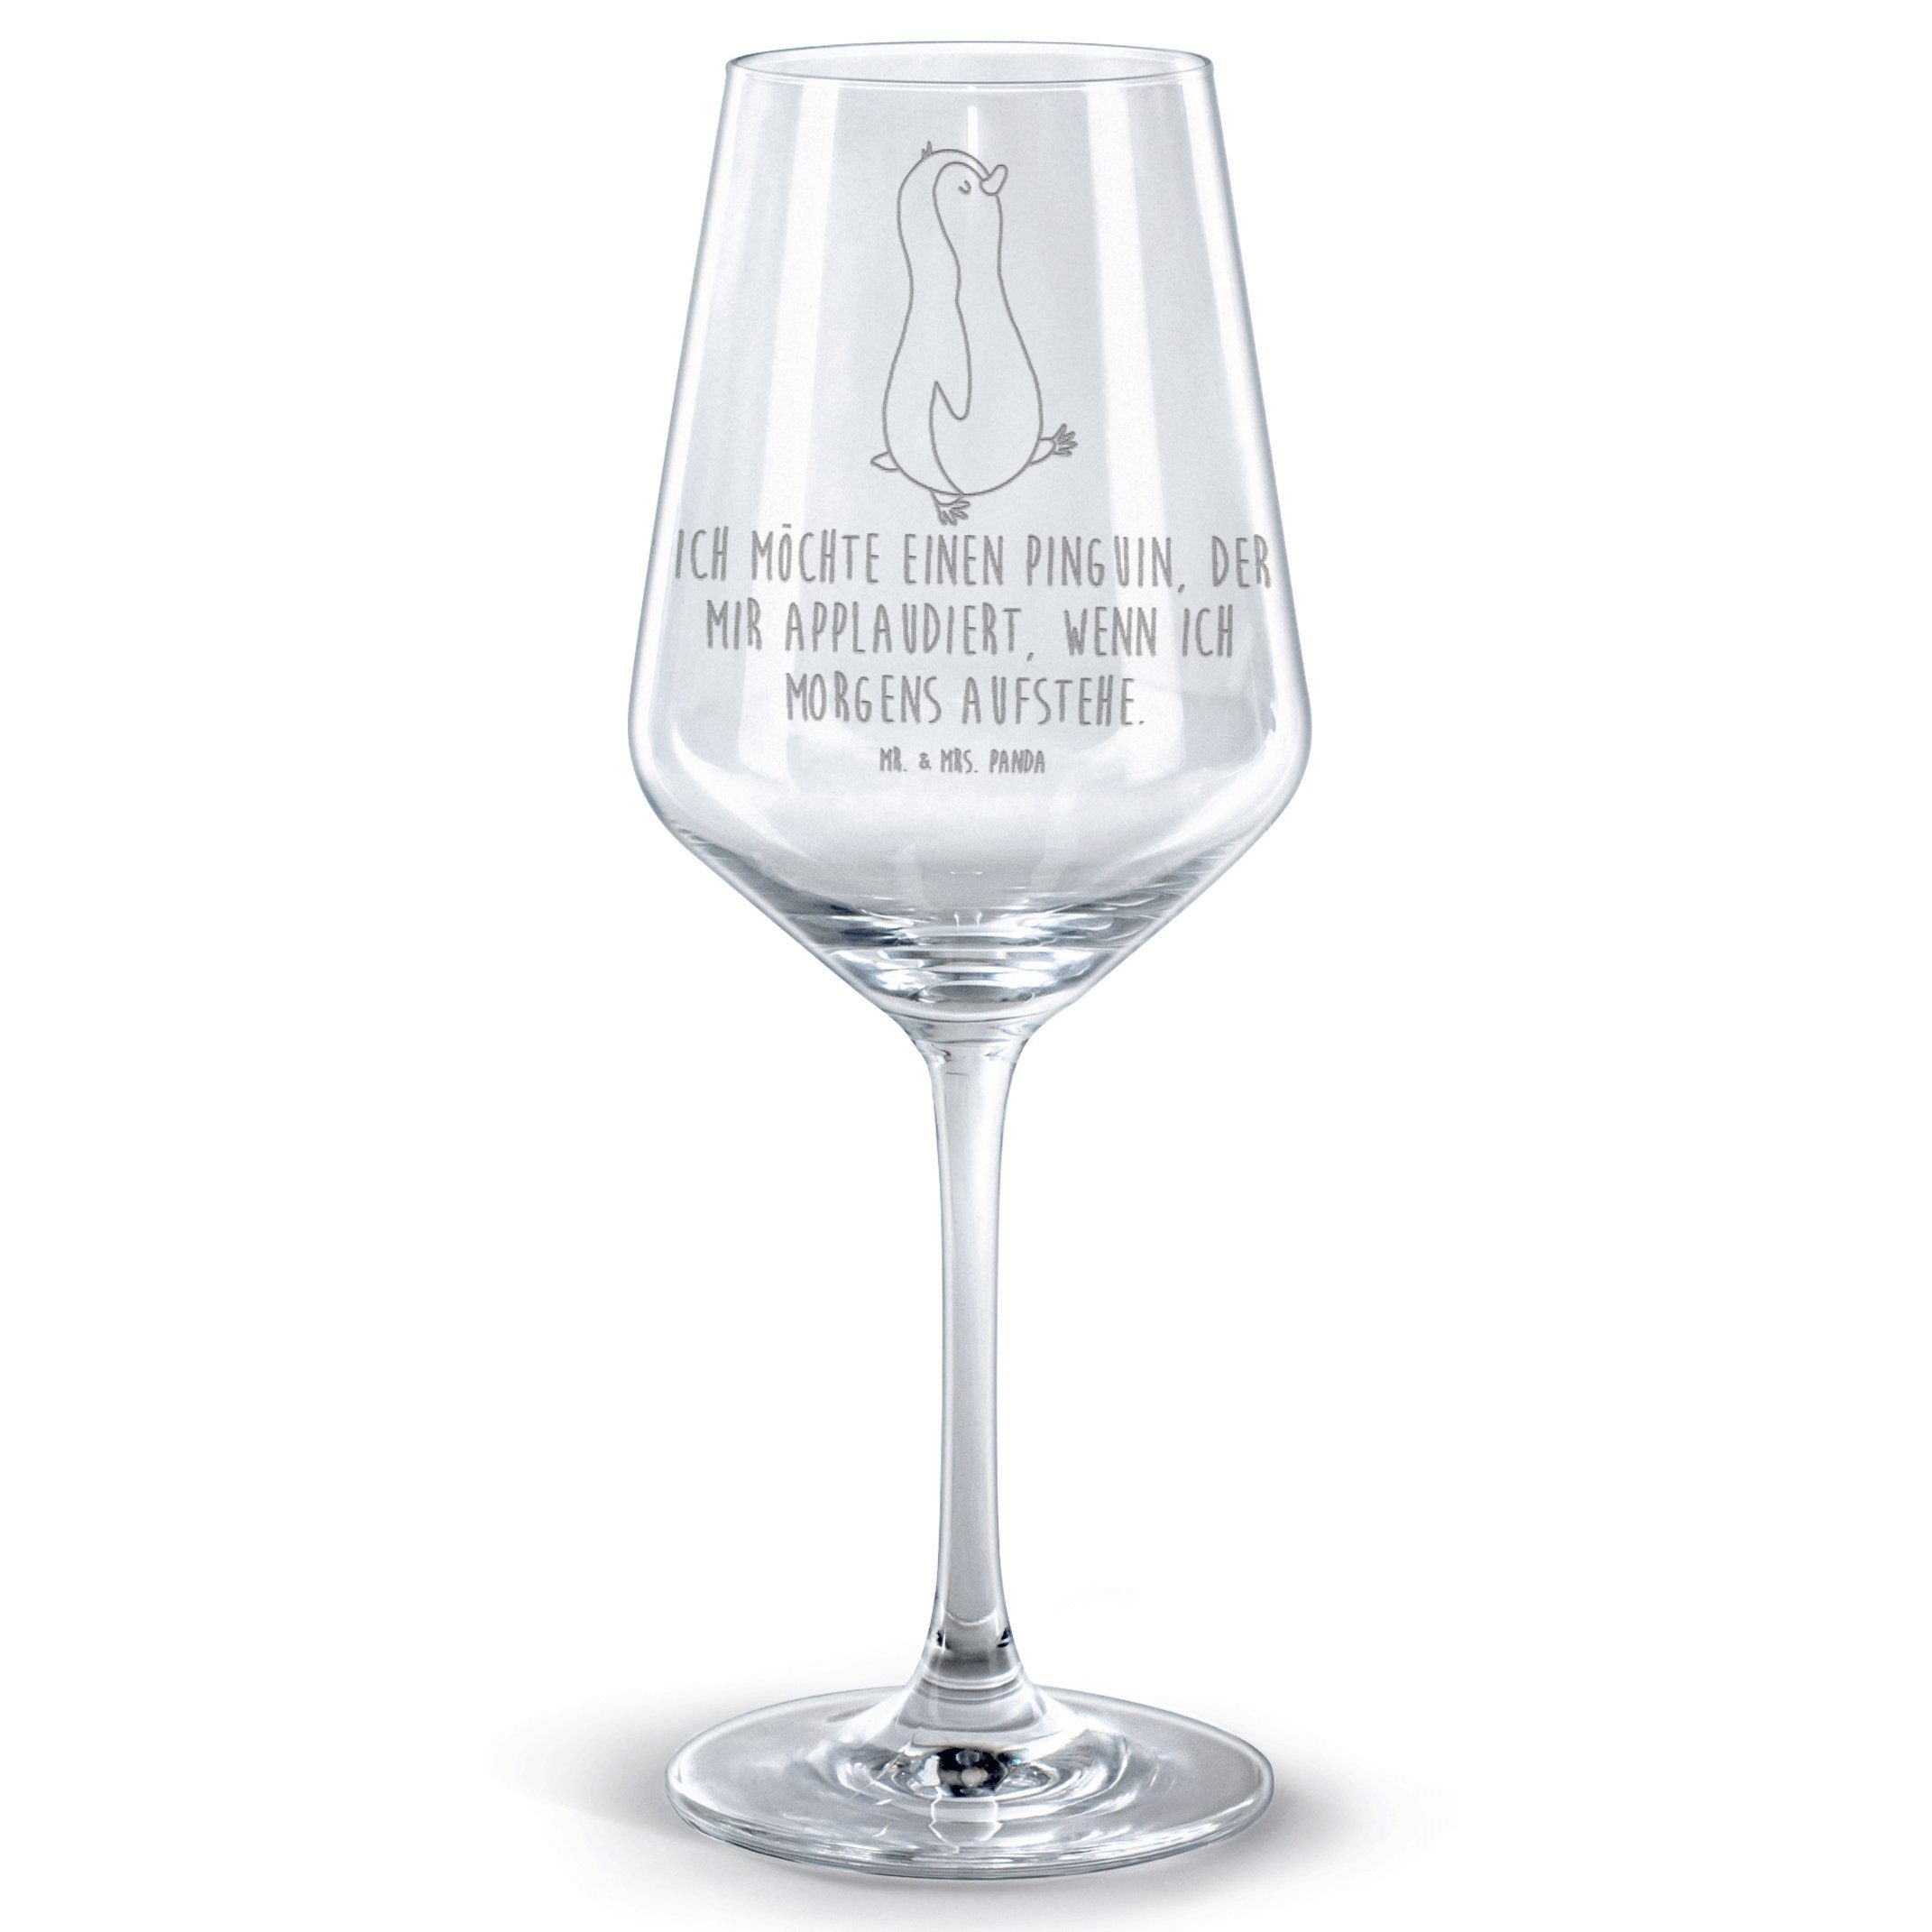 Mr. & Mrs. Panda Rotweinglas Pinguin marschieren - Transparent - Geschenk, spazieren, Rotwein Glas, Premium Glas, Stilvolle Gravur